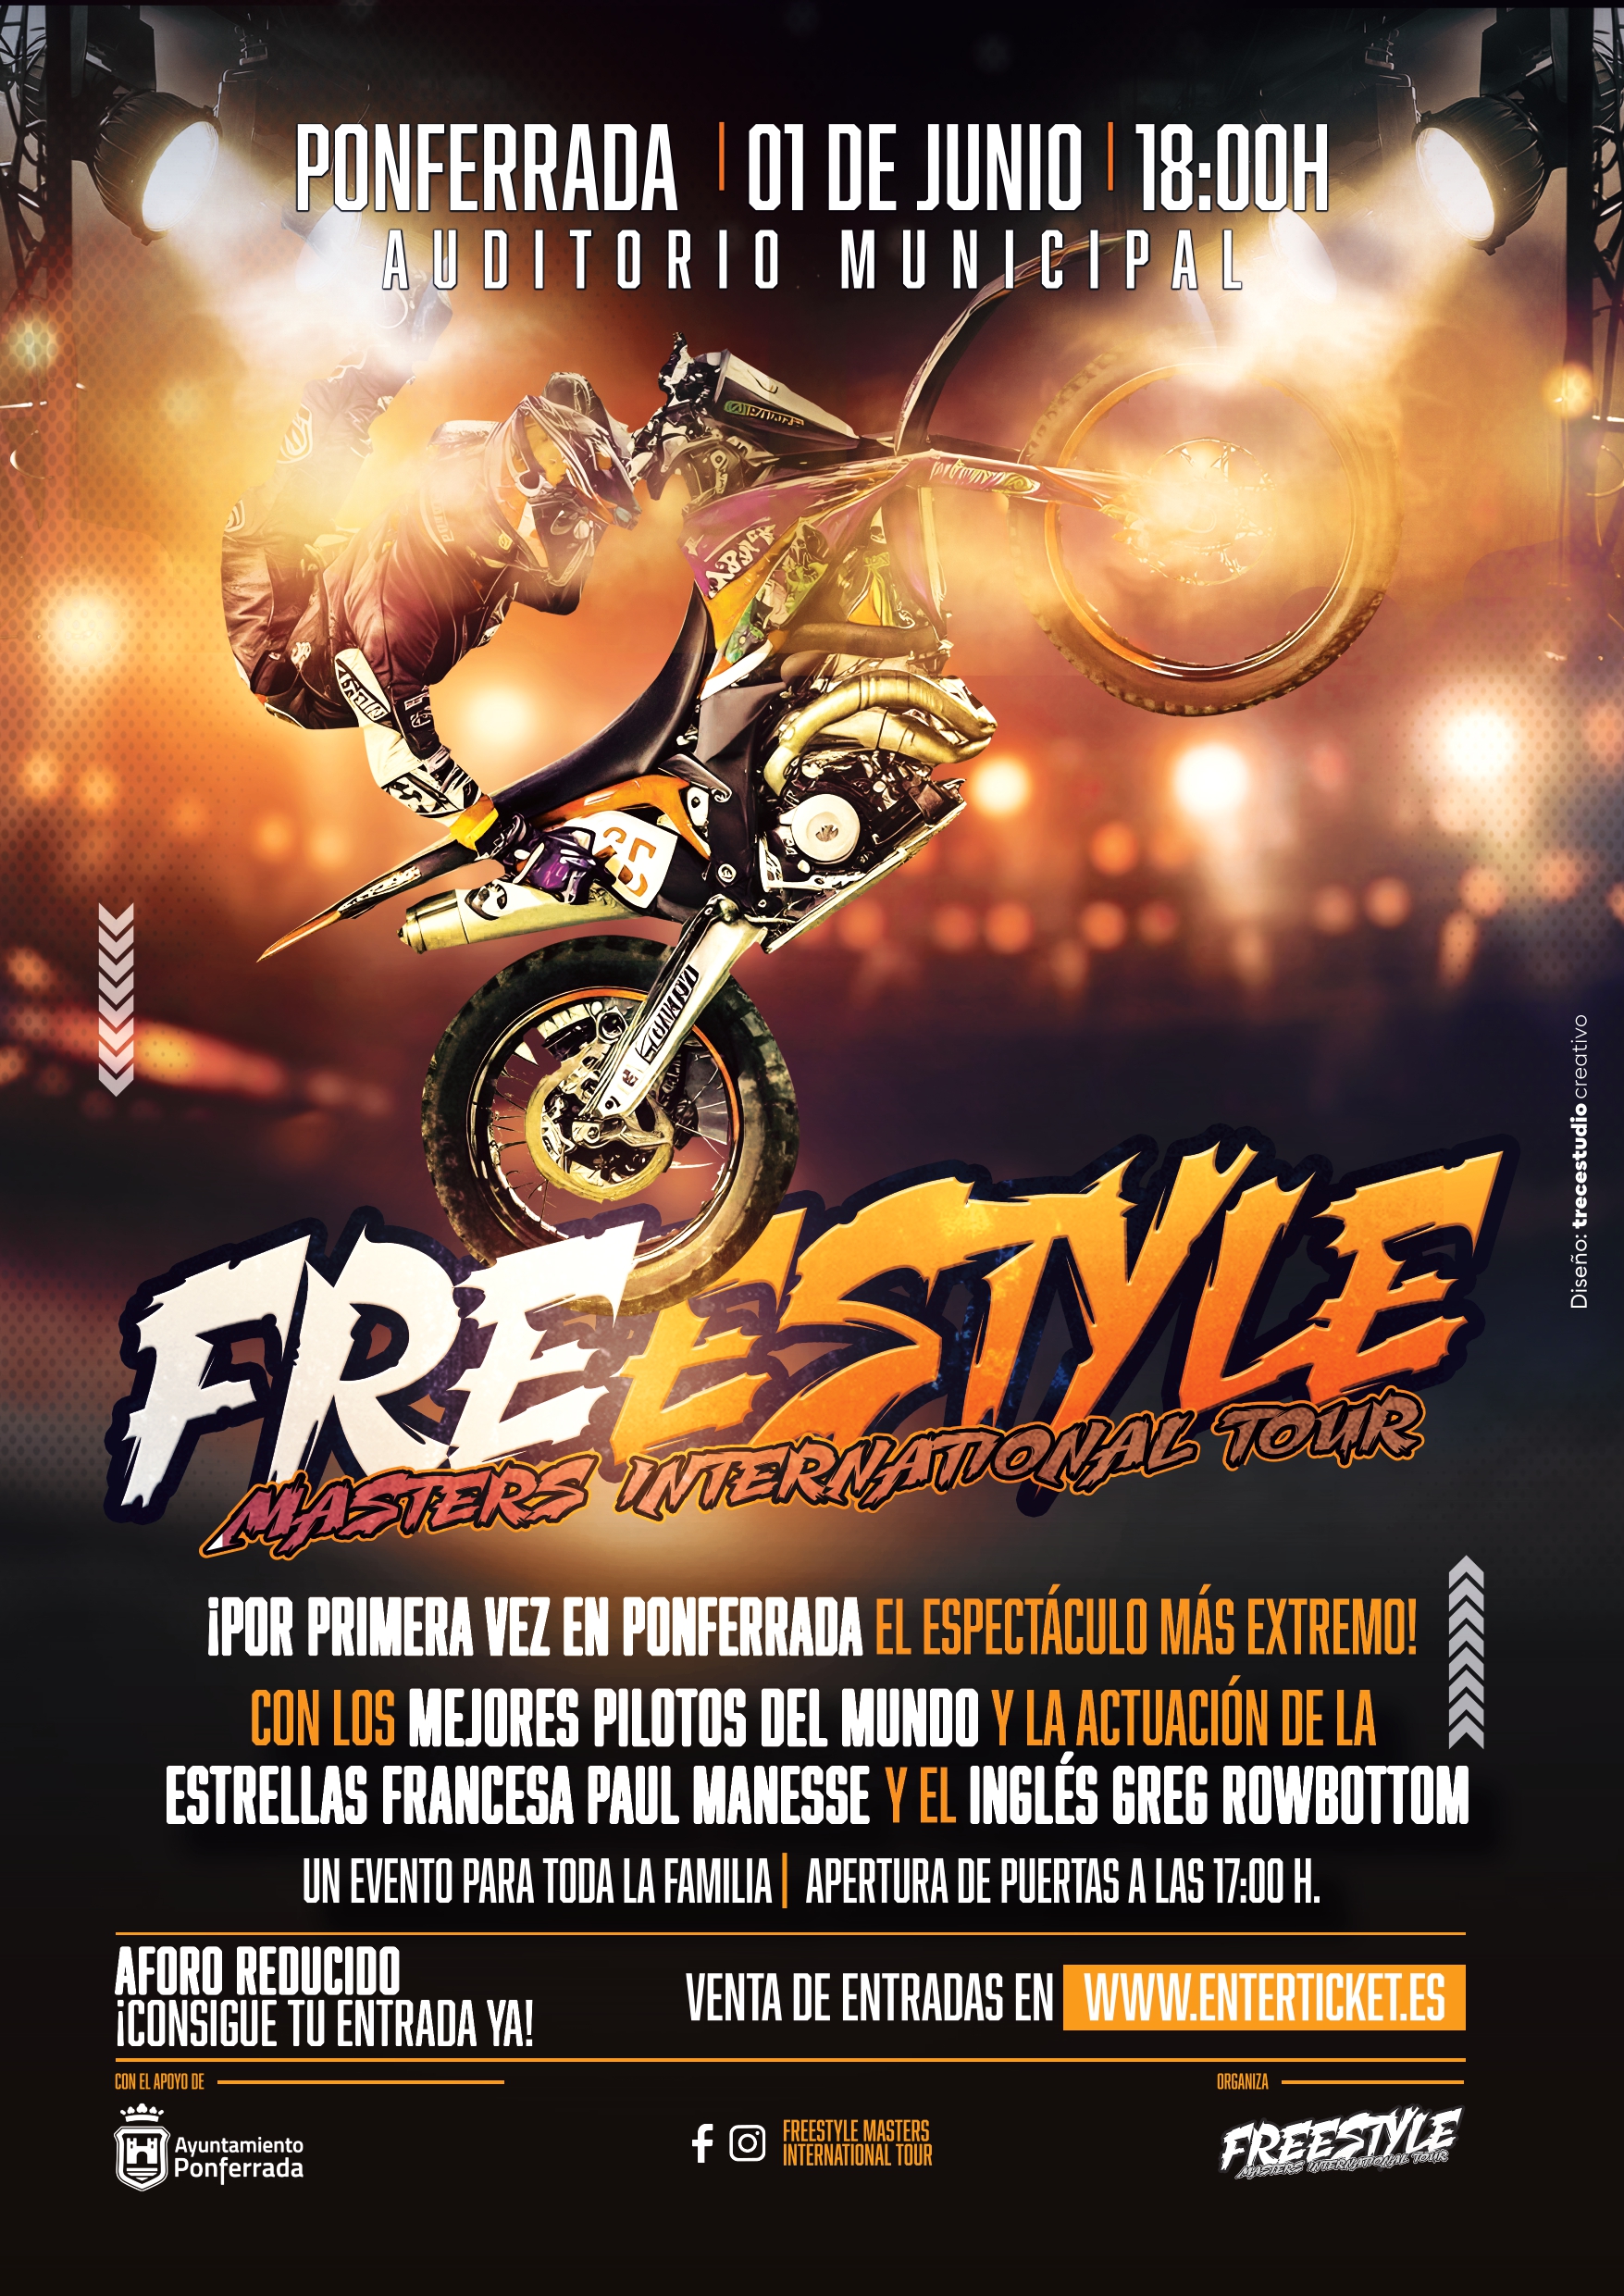 La exhibición Freestyle Masters International Tour La exhibición llegará a Ponferrada el 1 de junio 15